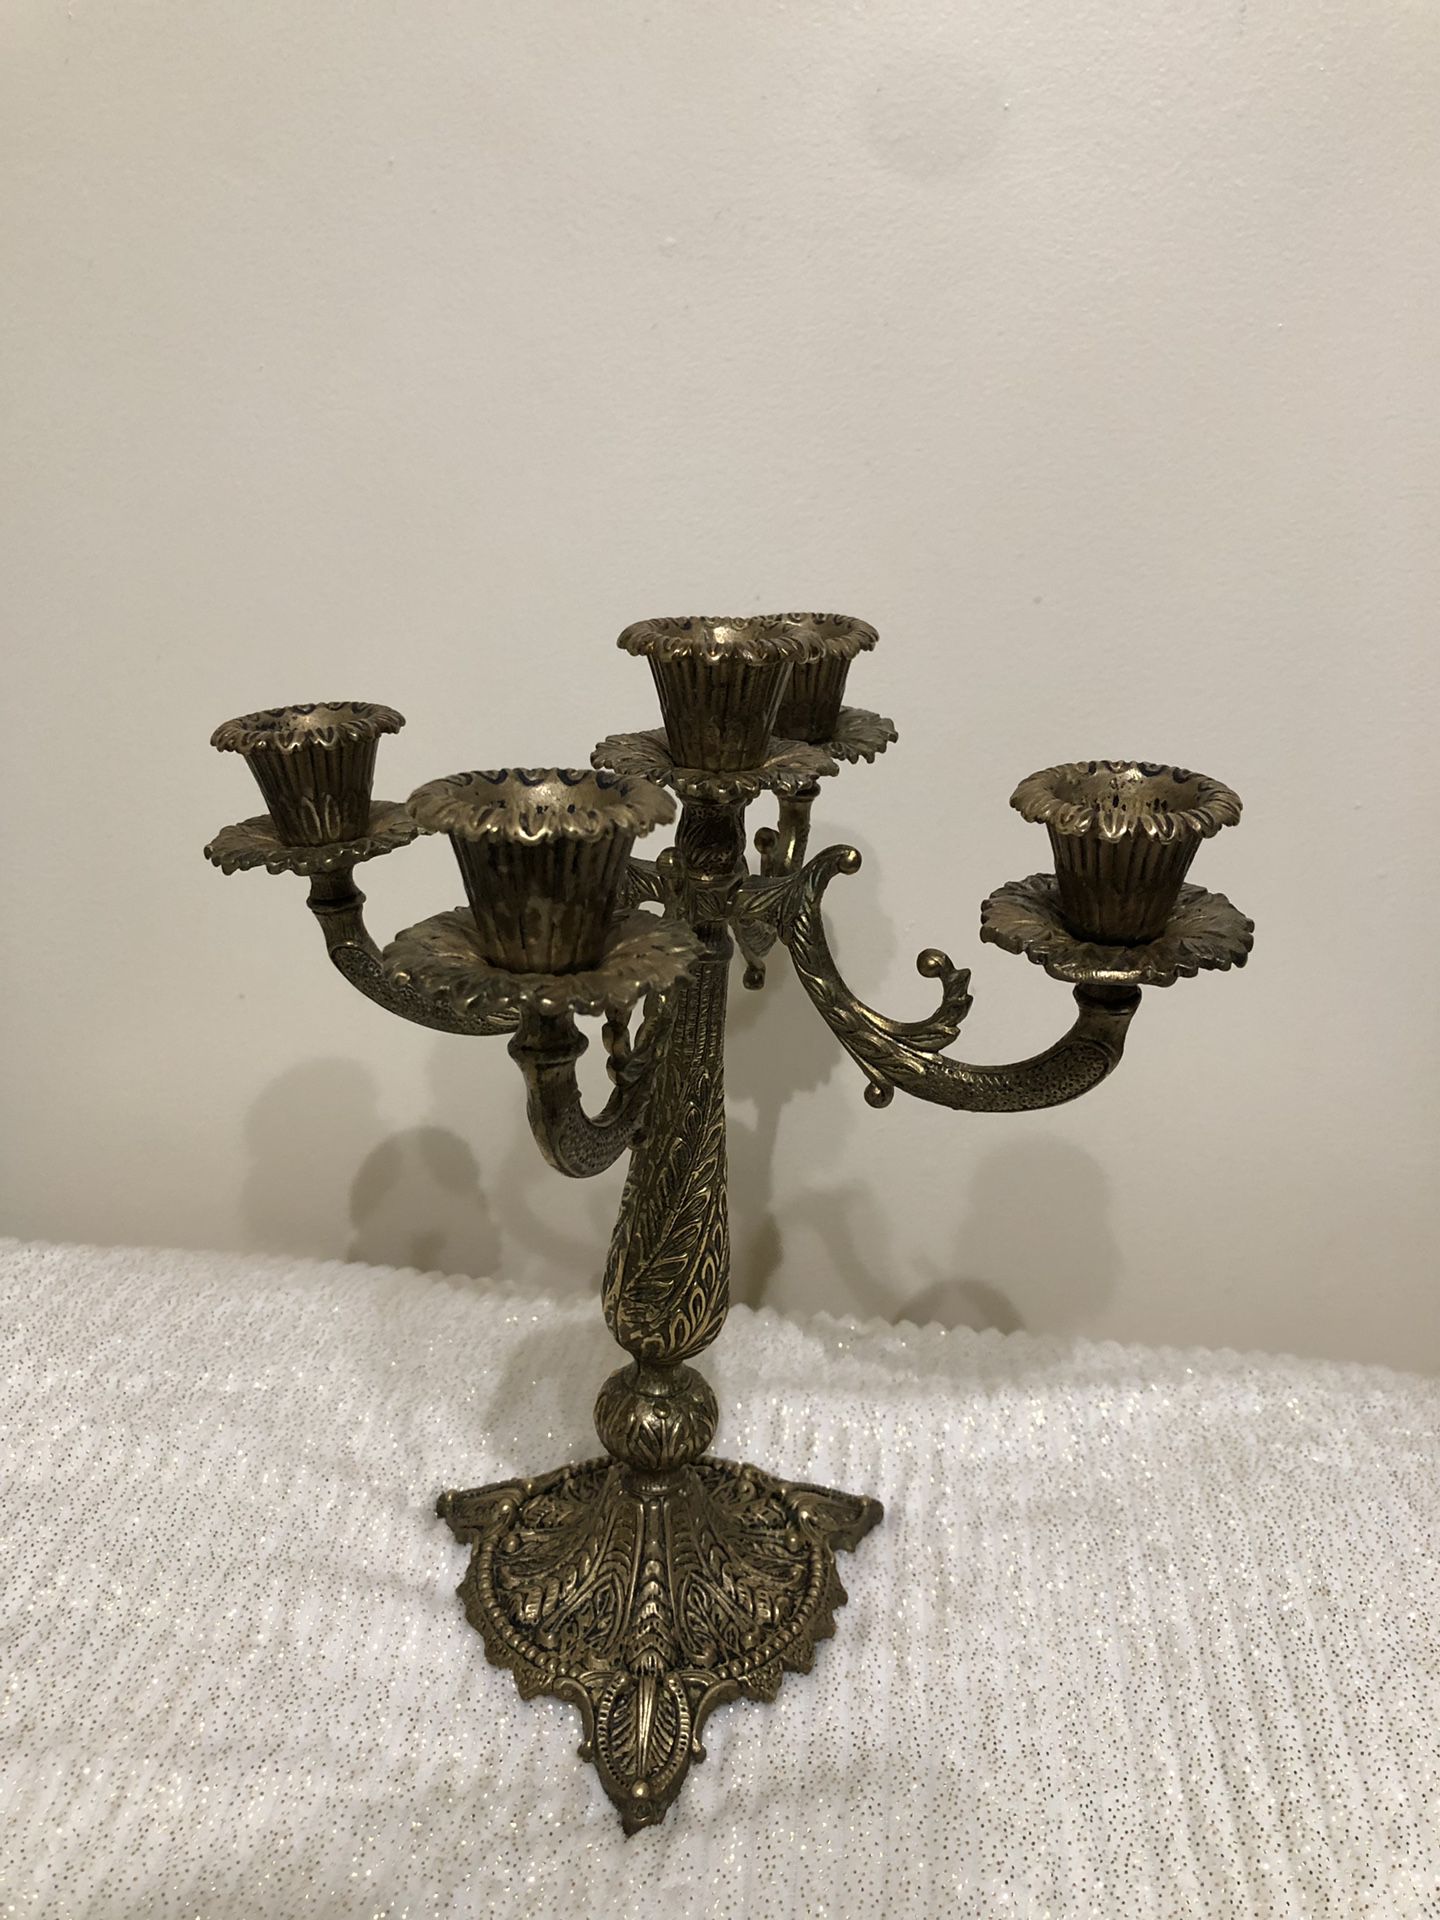 Vintage Israel bronze Candelabra. 5 arms